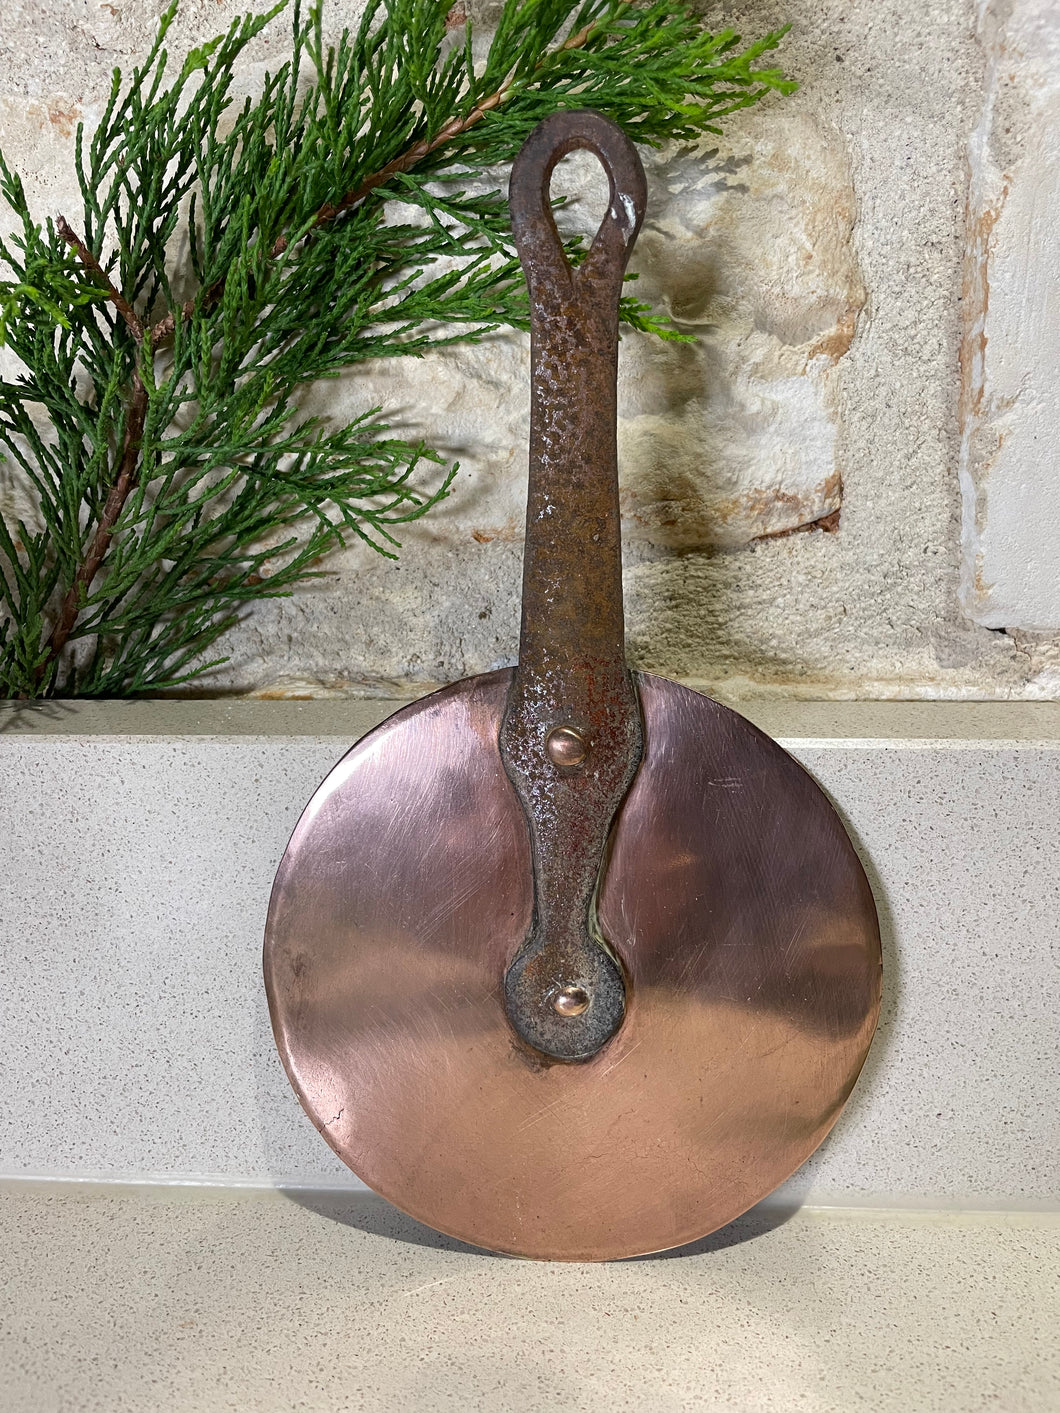 Antique Copper pan lid 13.5cms